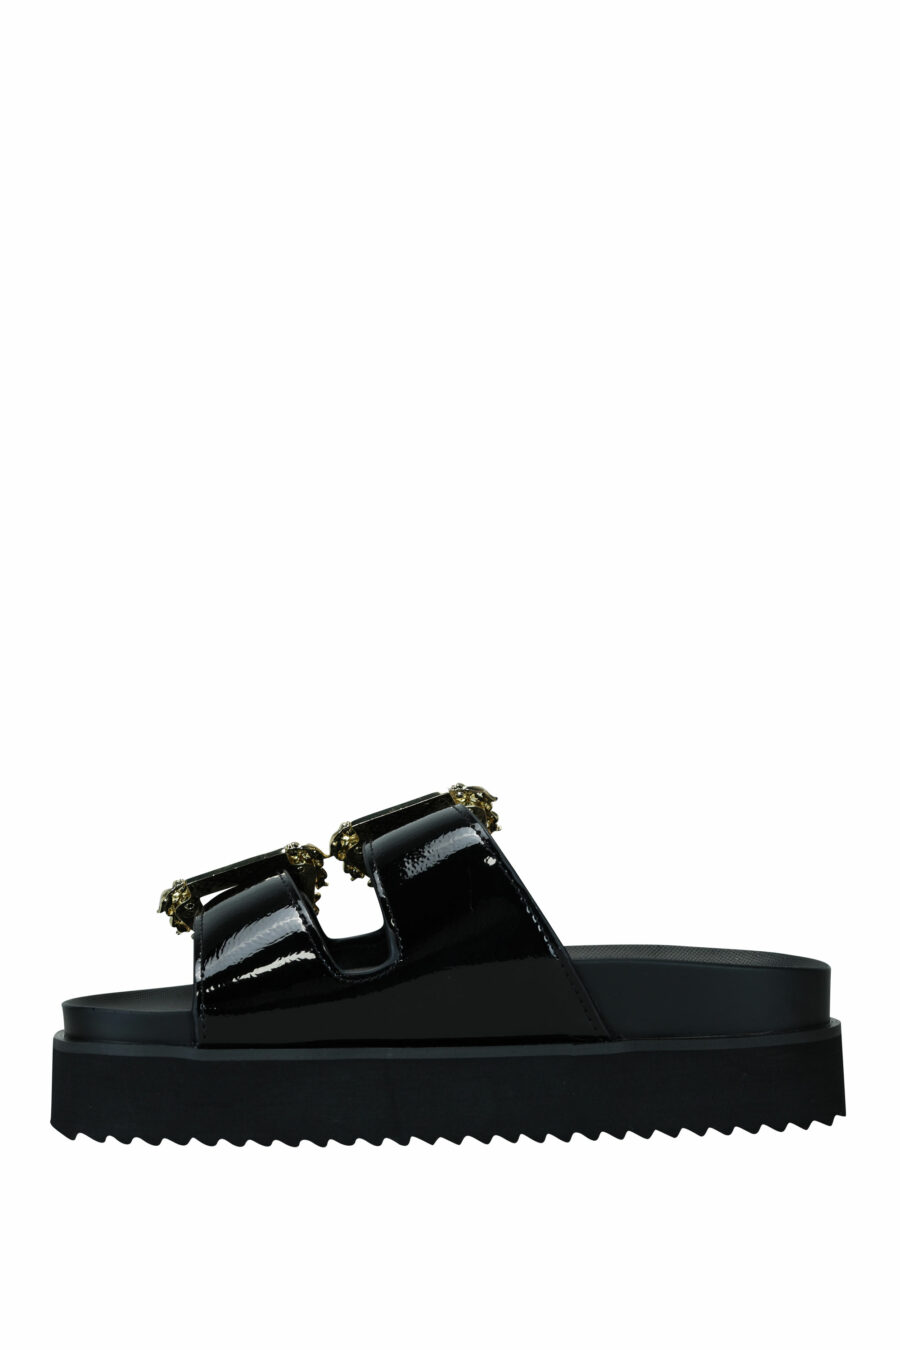 Sandales noires avec double boucle baroque dorée - 8052019607253 2